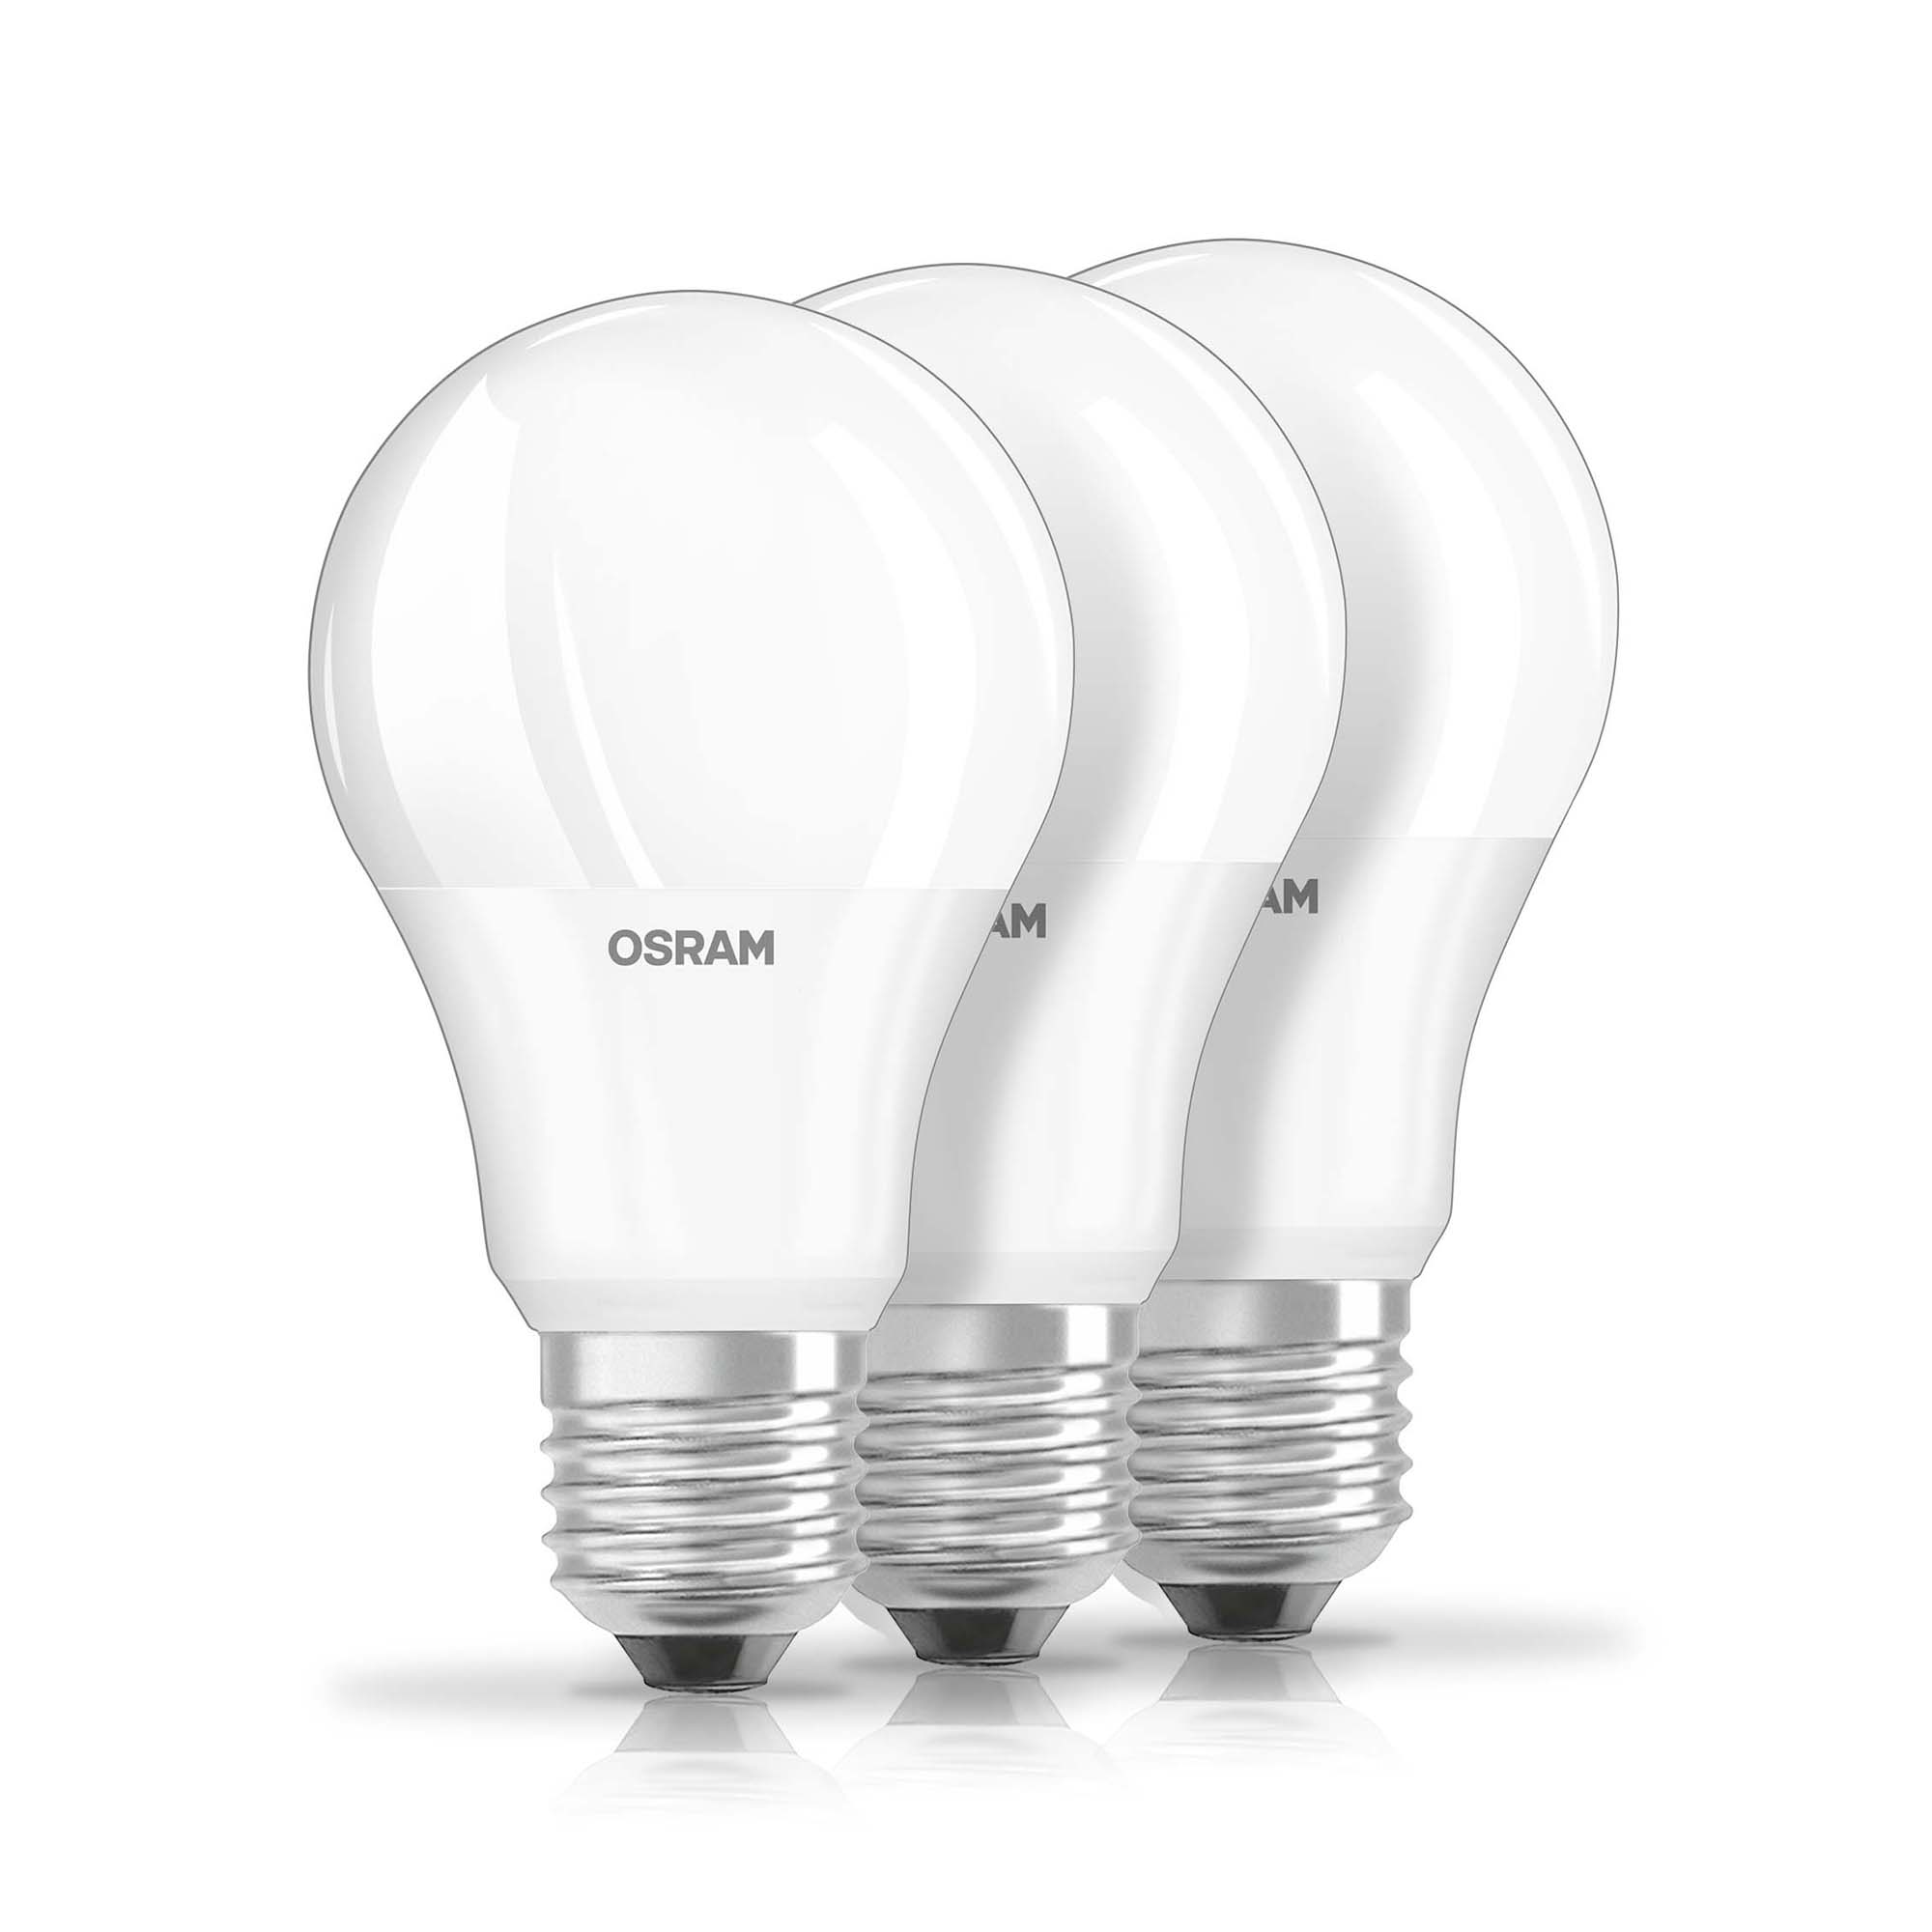 Bec LED Osram LED BASE CLA60 9W 827 FR E27 3er-Pack 2700K 806lm